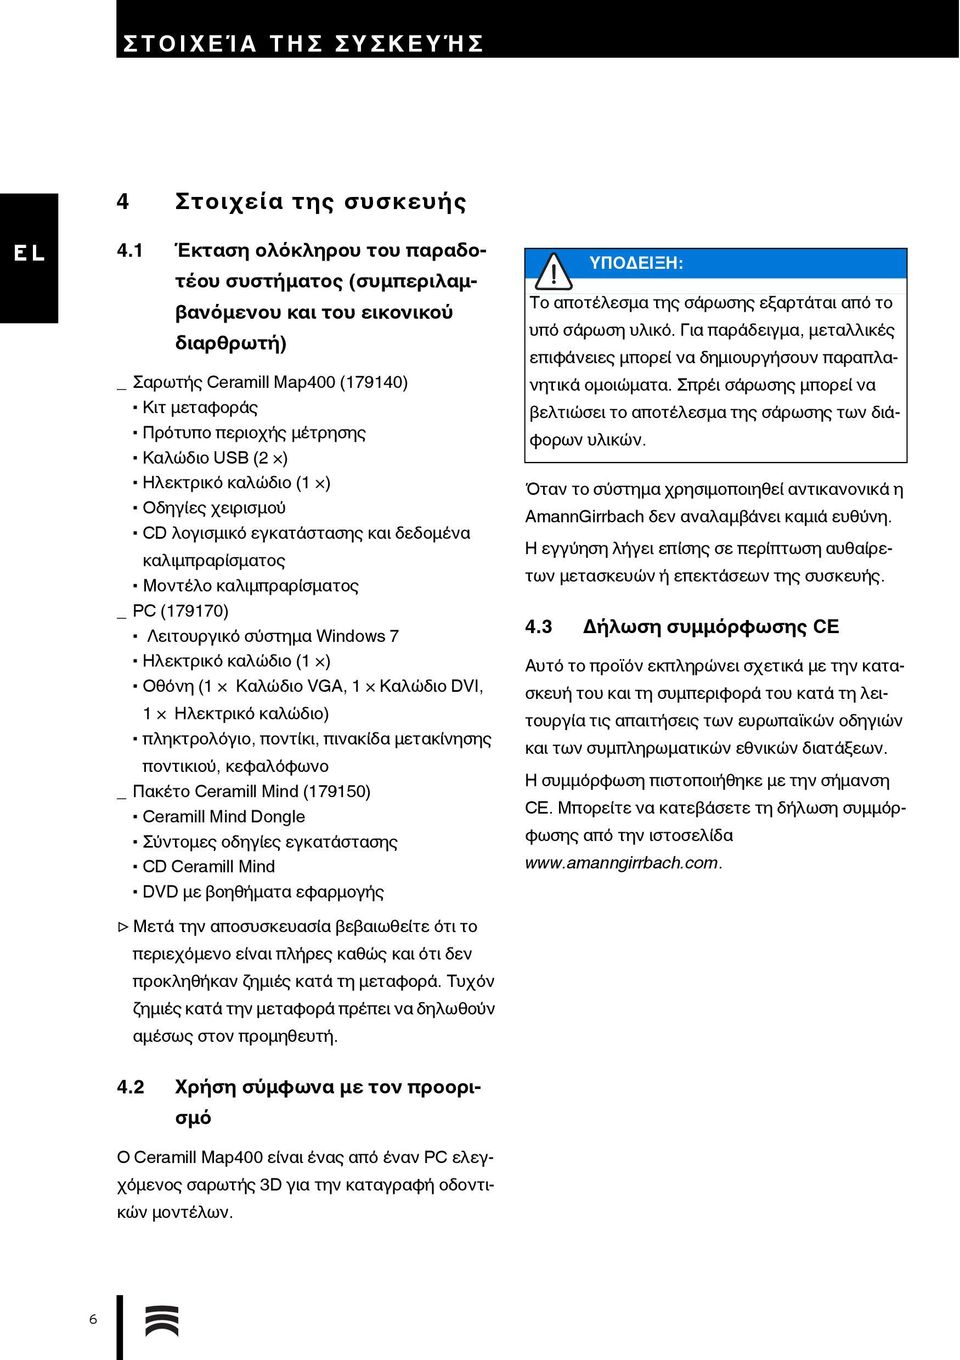 καλώδιο (1 ) Οδηγίες χειρισμού CD λογισμικό εγκατάστασης και δεδομένα καλιμπραρίσματος Μοντέλο καλιμπραρίσματος _ PC (179170) Λειτουργικό σύστημα Windows 7 Ηλεκτρικό καλώδιο (1 ) Οθόνη (1 Καλώδιο